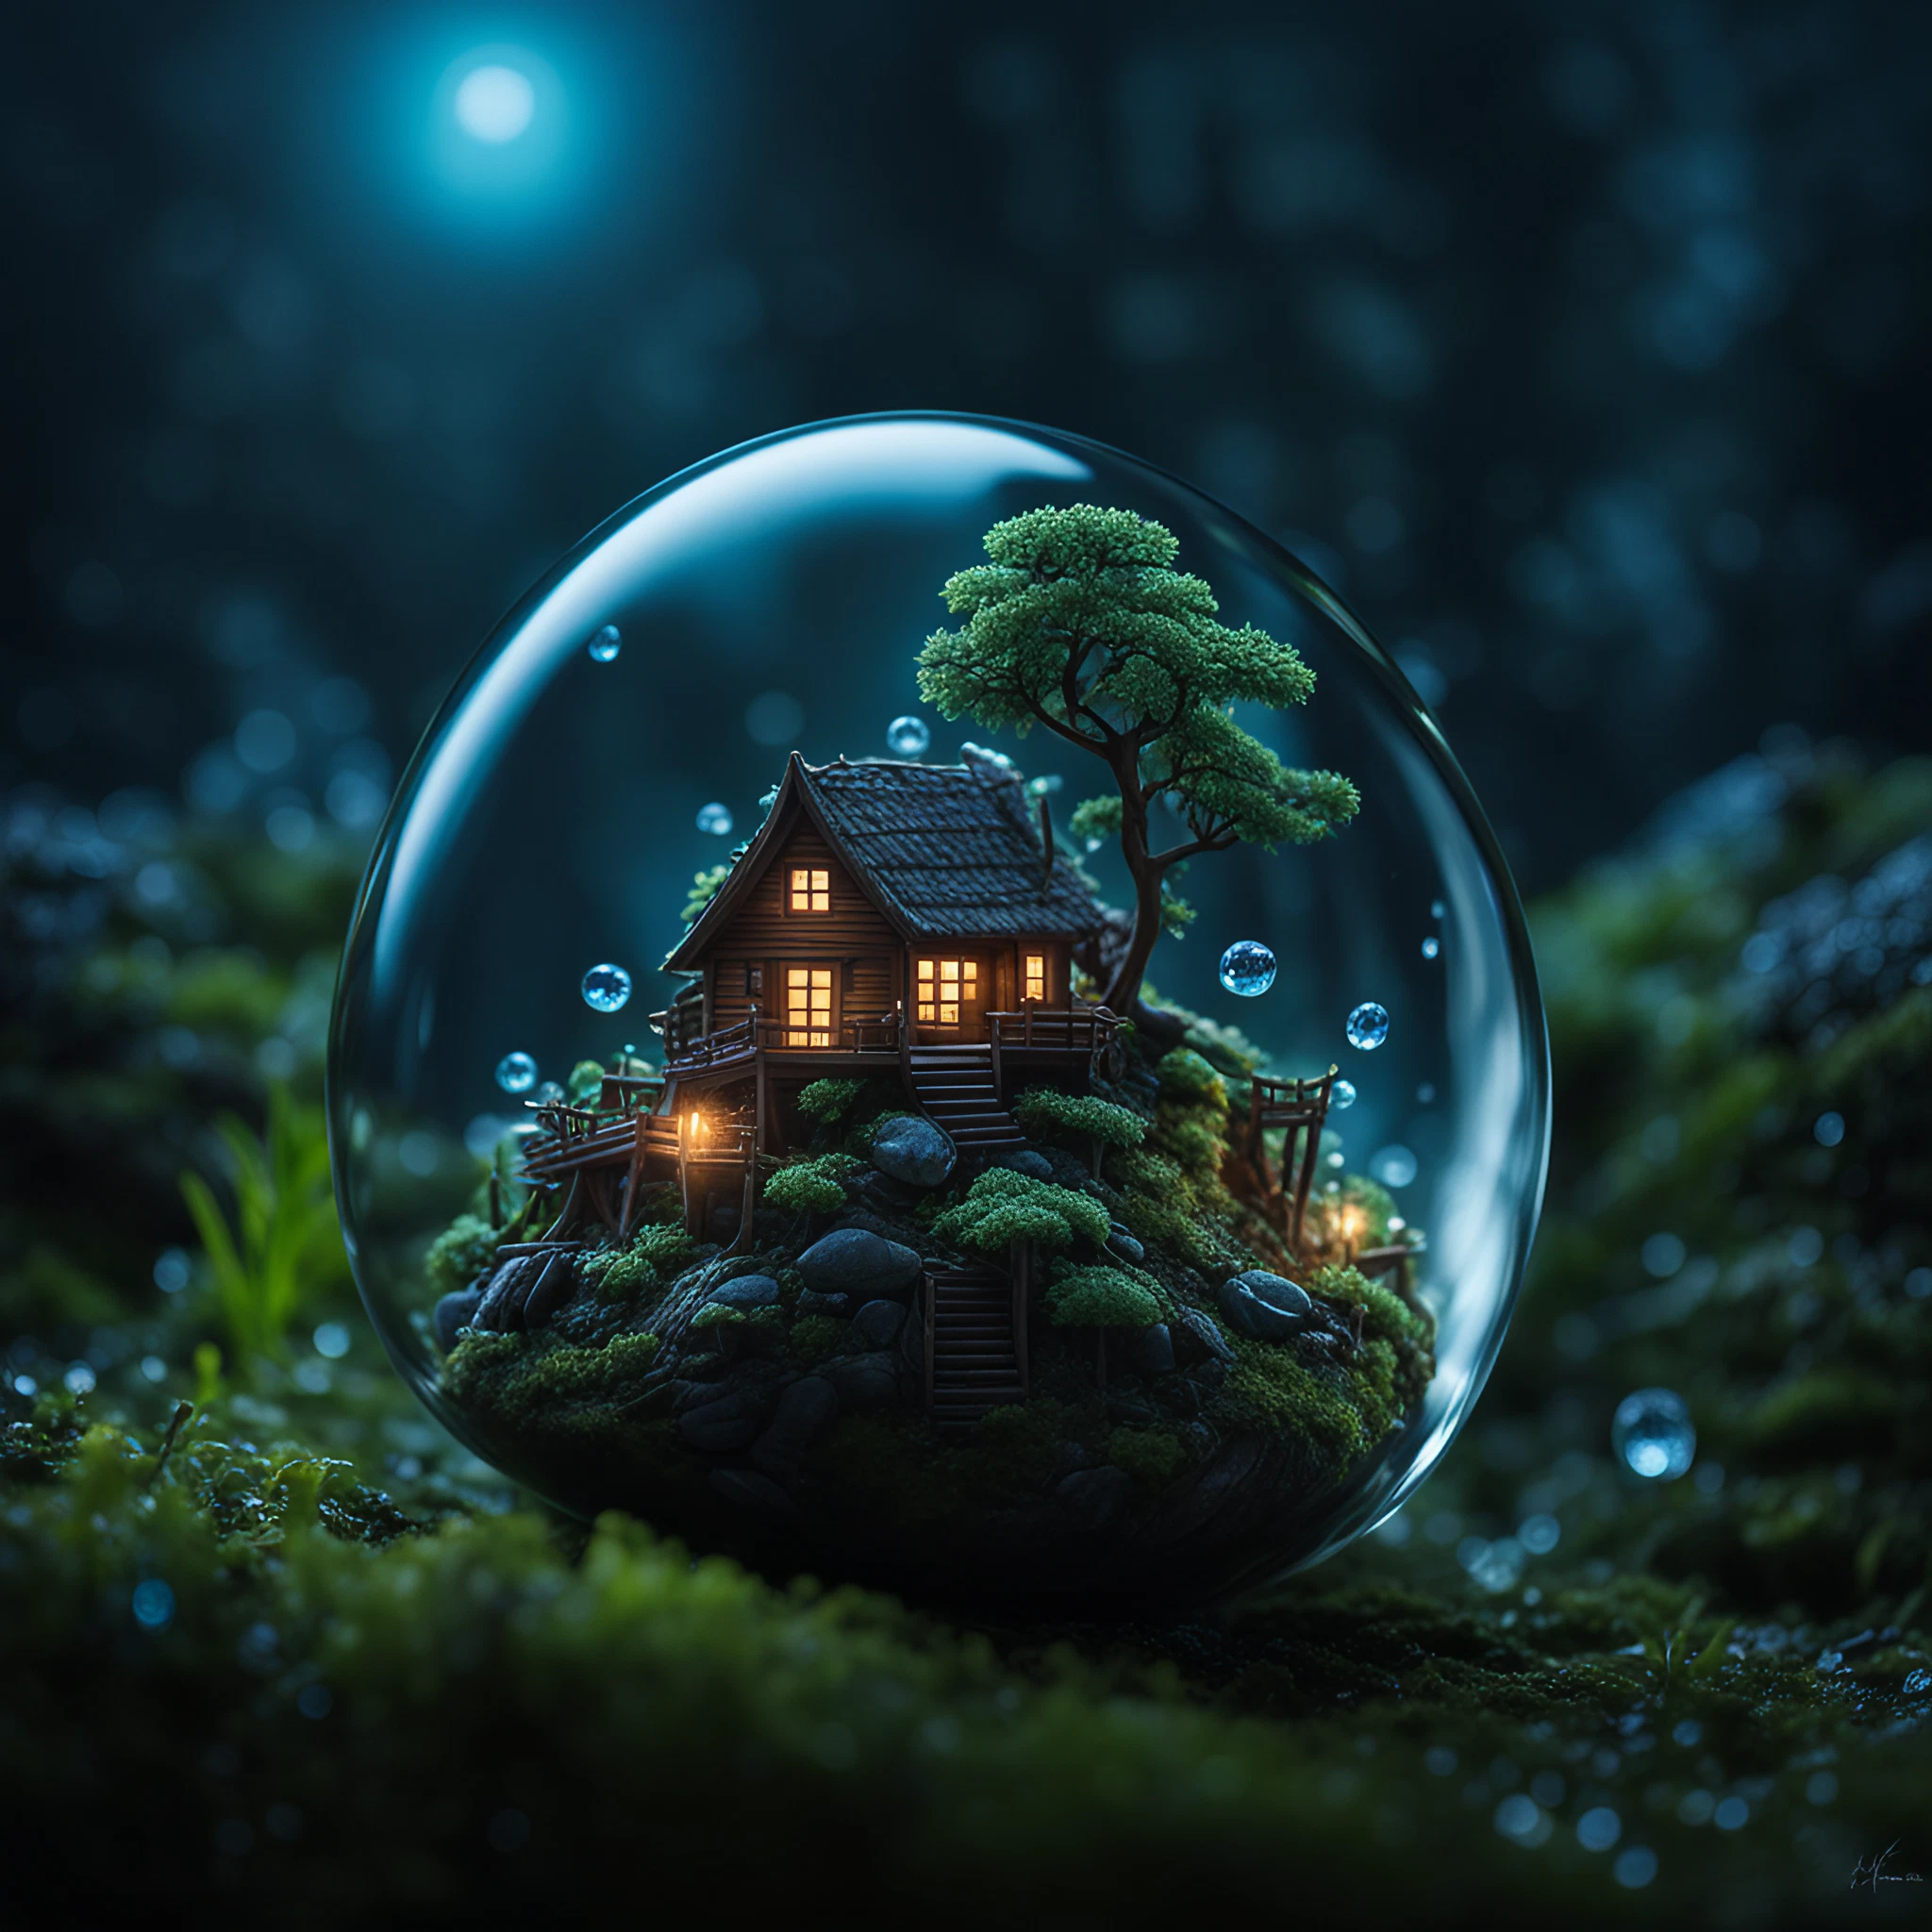 美しい宝石のようなミニチュアの家＆綺麗で幻想的な月明りと自然の無料リアル画像素材